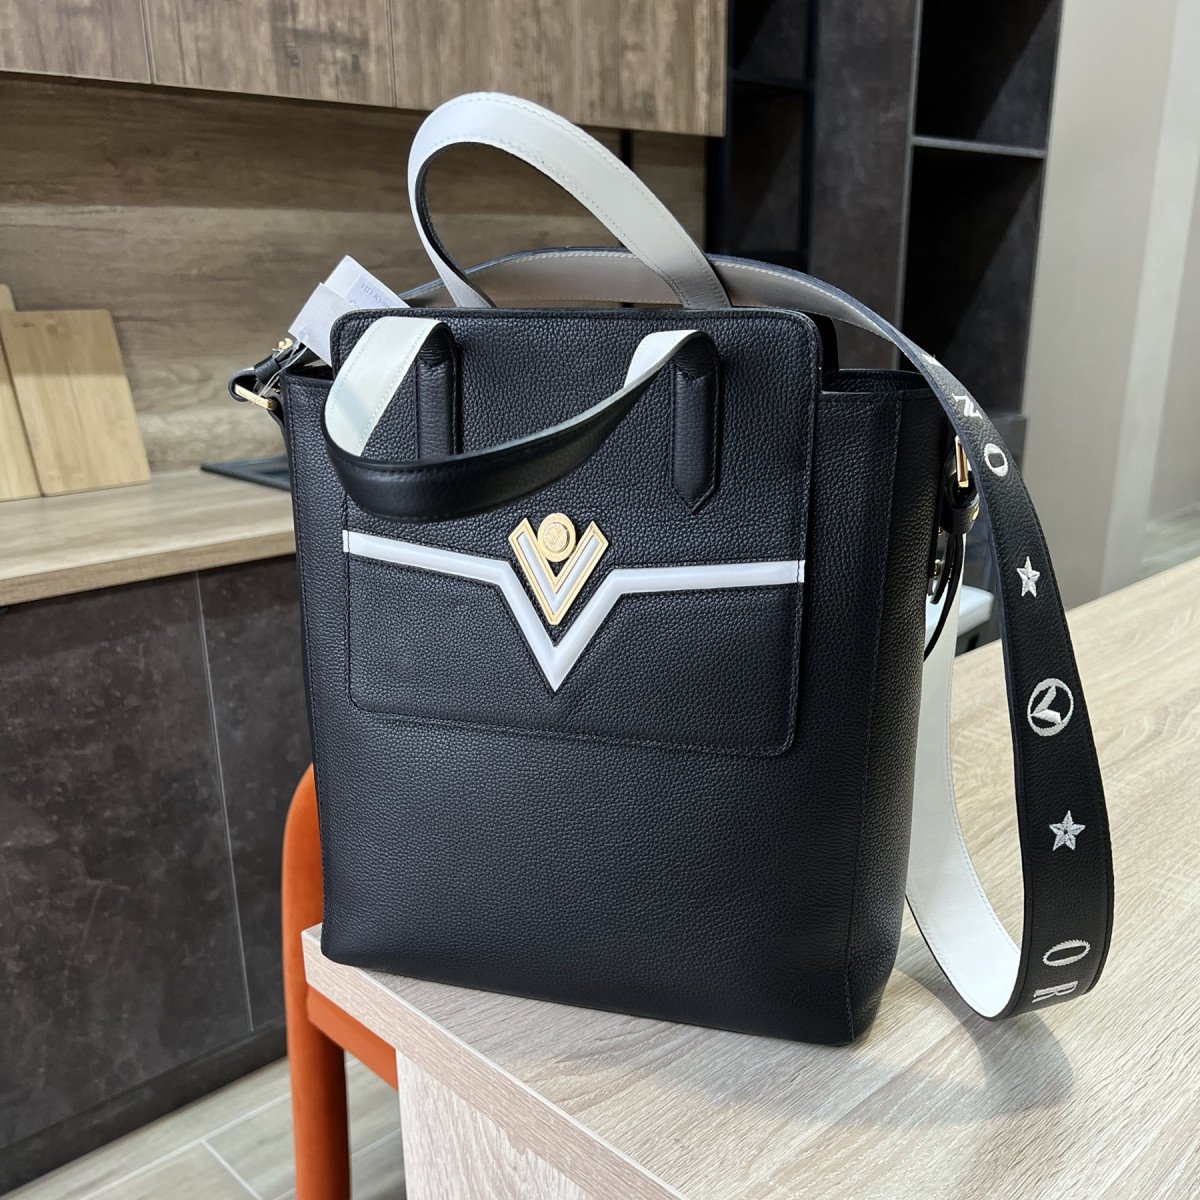 Кожаная сумка Valentino Orlandi 6790 nero из натуральной кожи